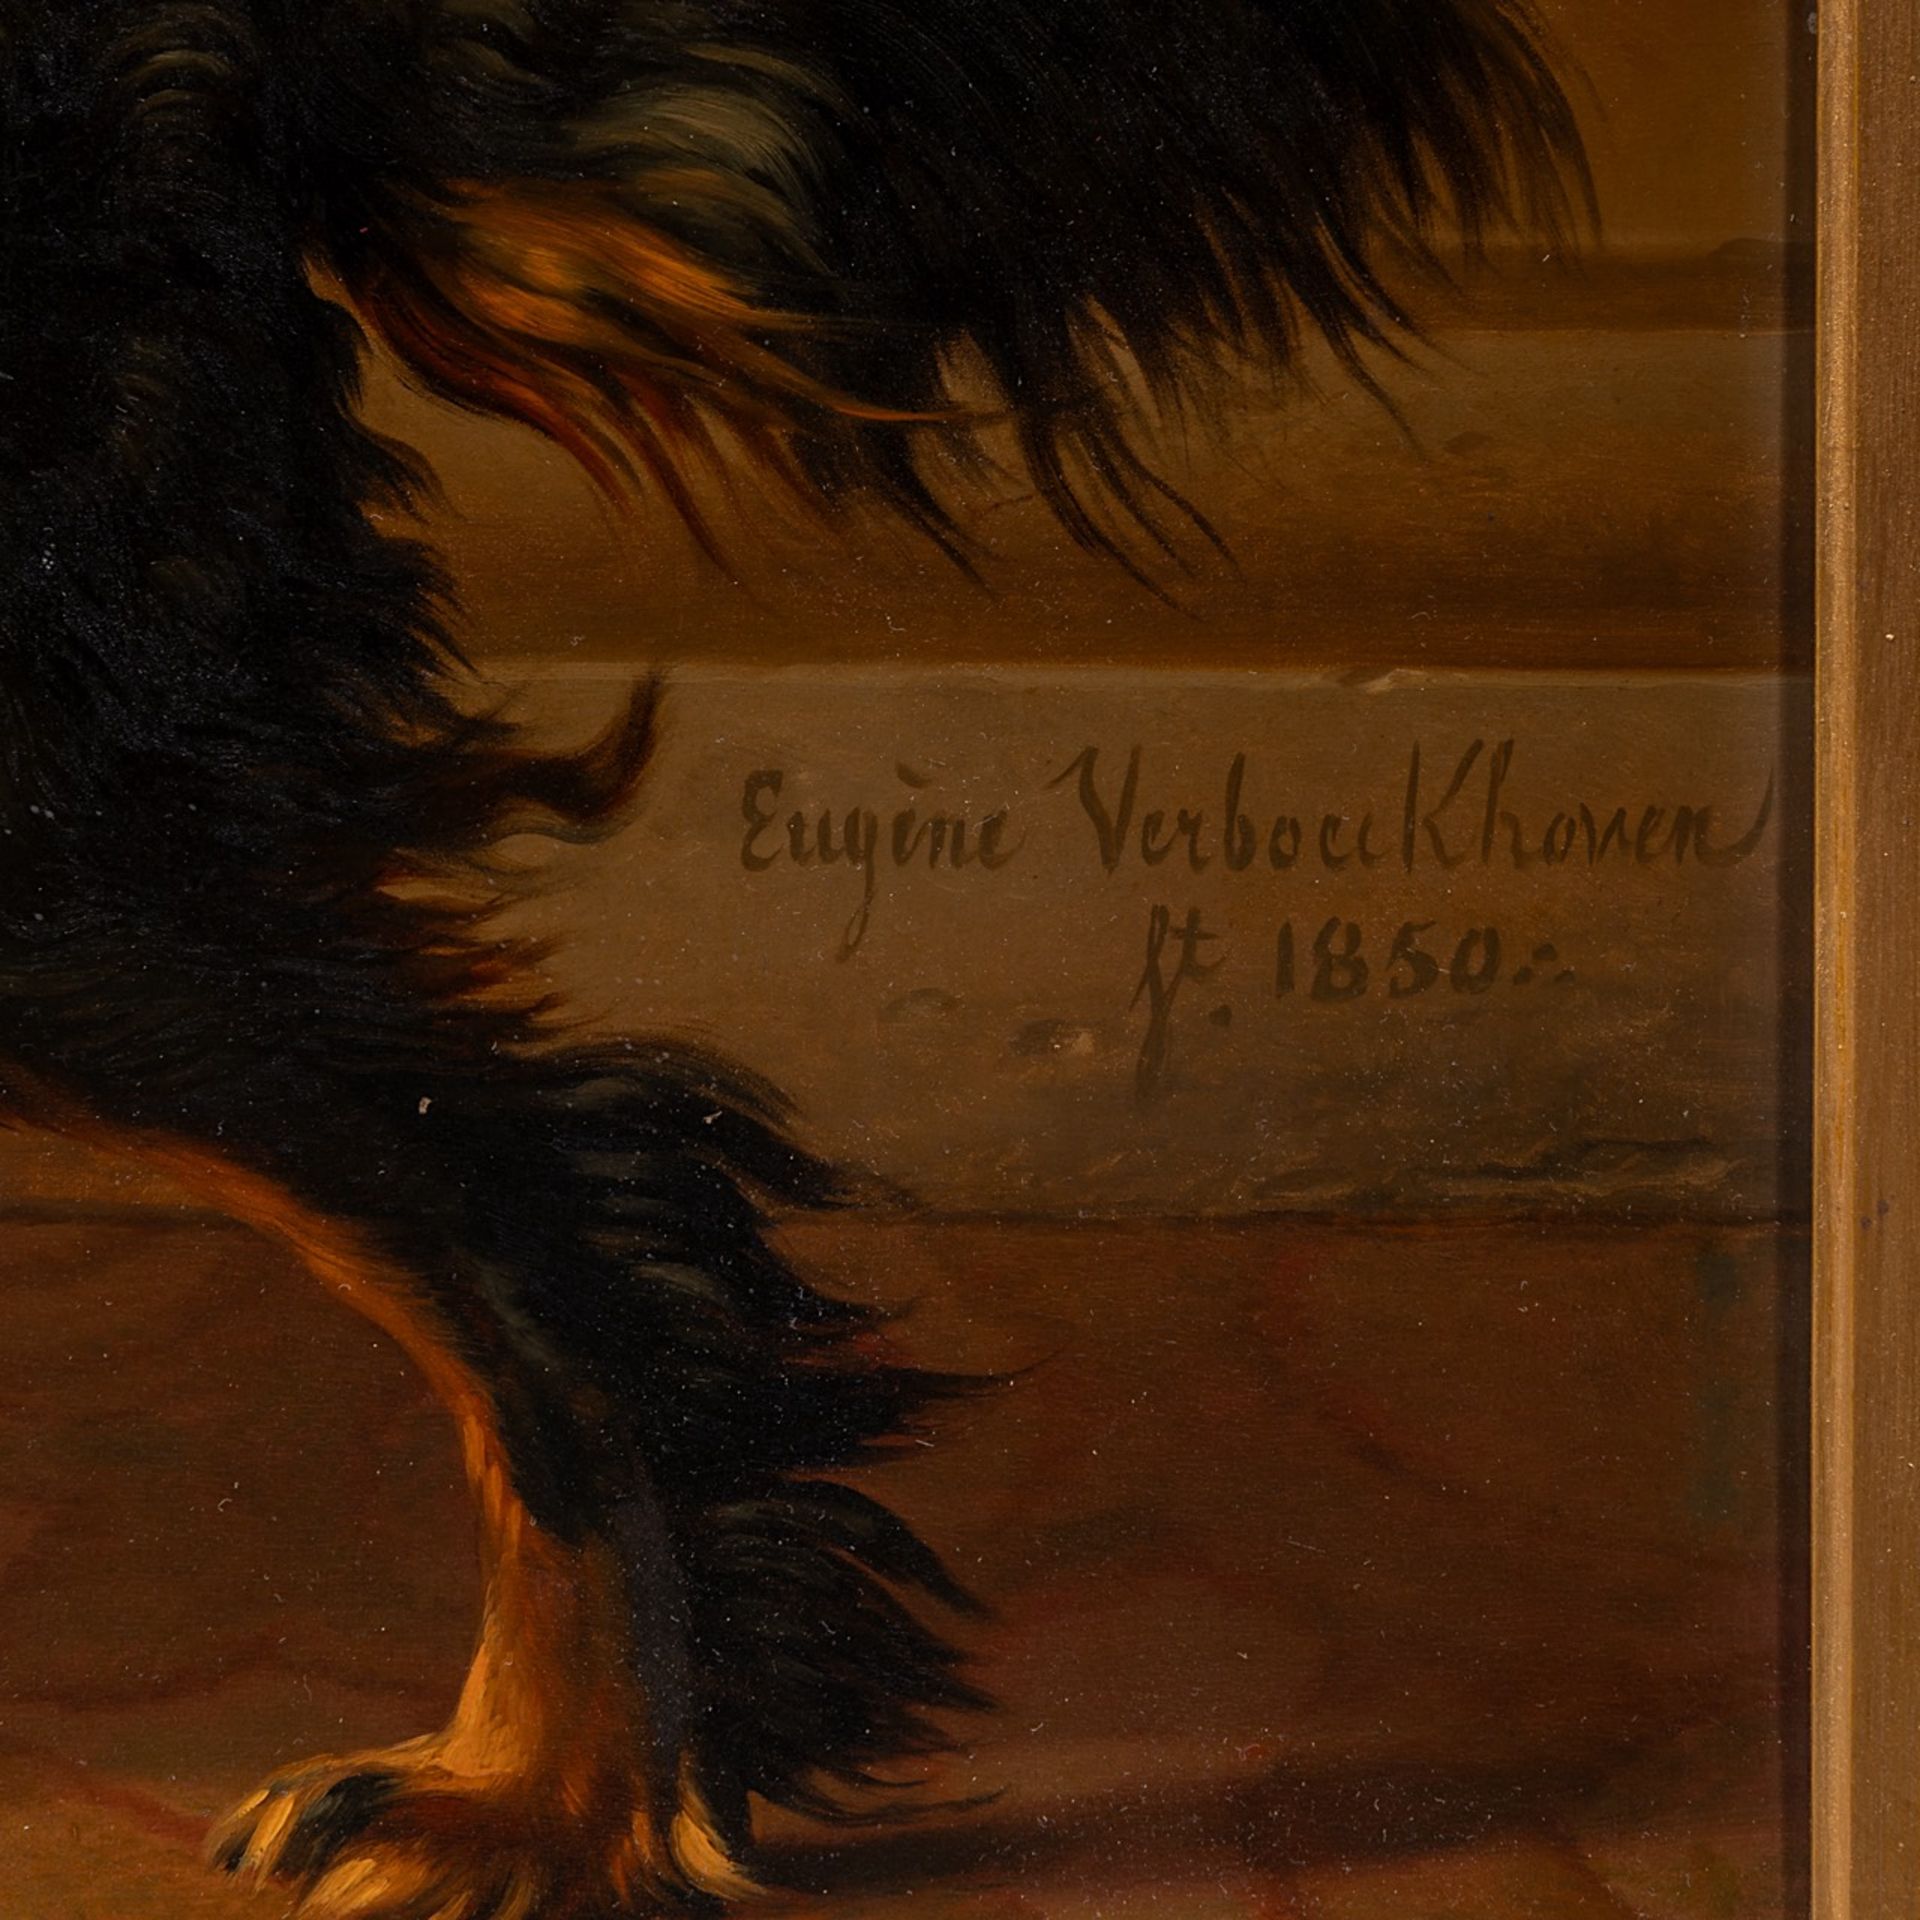 Eugene Verboeckhoven (1798/99-1881), A King Charles cavalier spaniel named Duke, 1850, oil on mahoga - Image 6 of 7